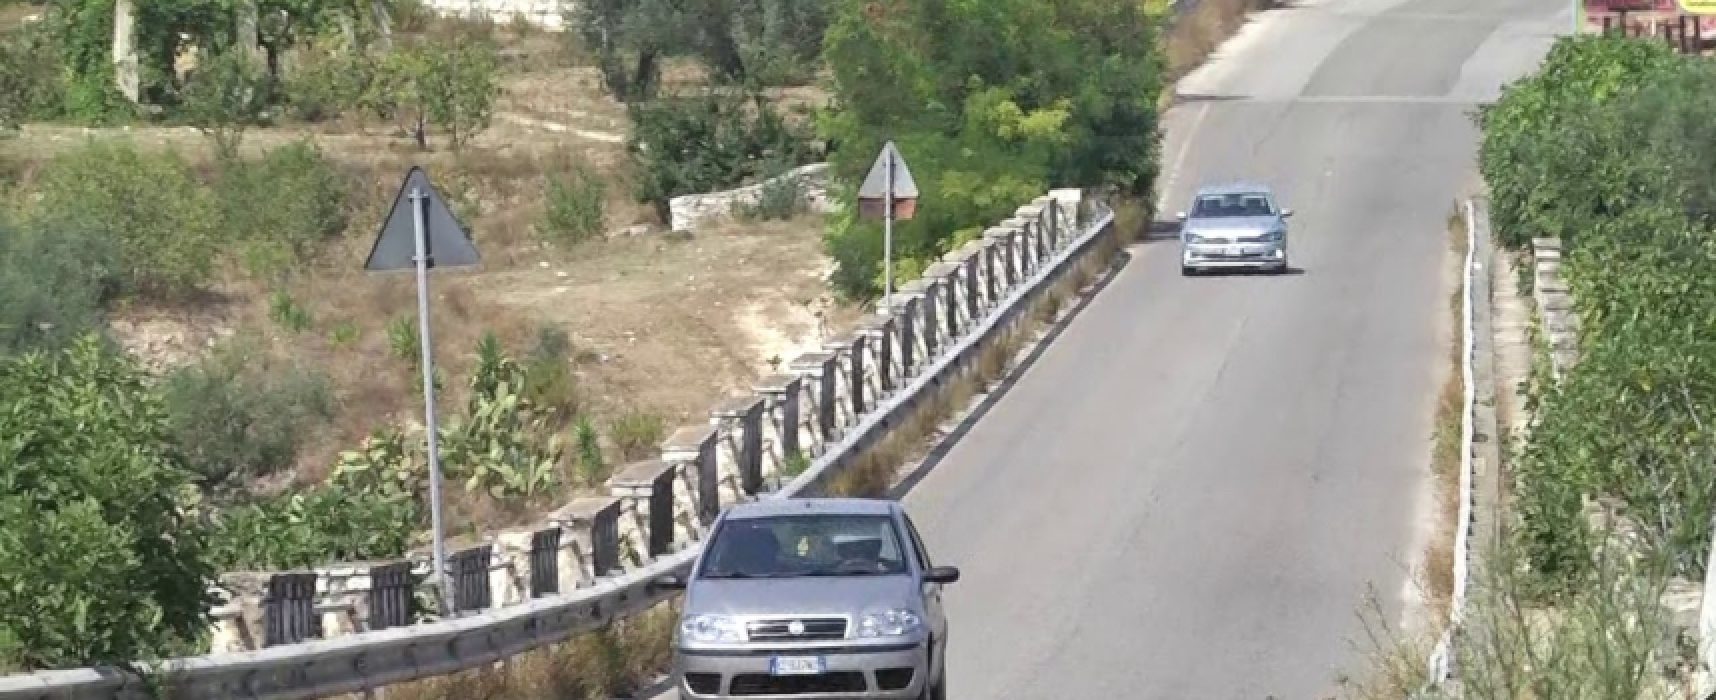 Provincia Bat: pubblicato bando per lavori viadotto Santa Croce, previsto intervento anche per ponte Lama